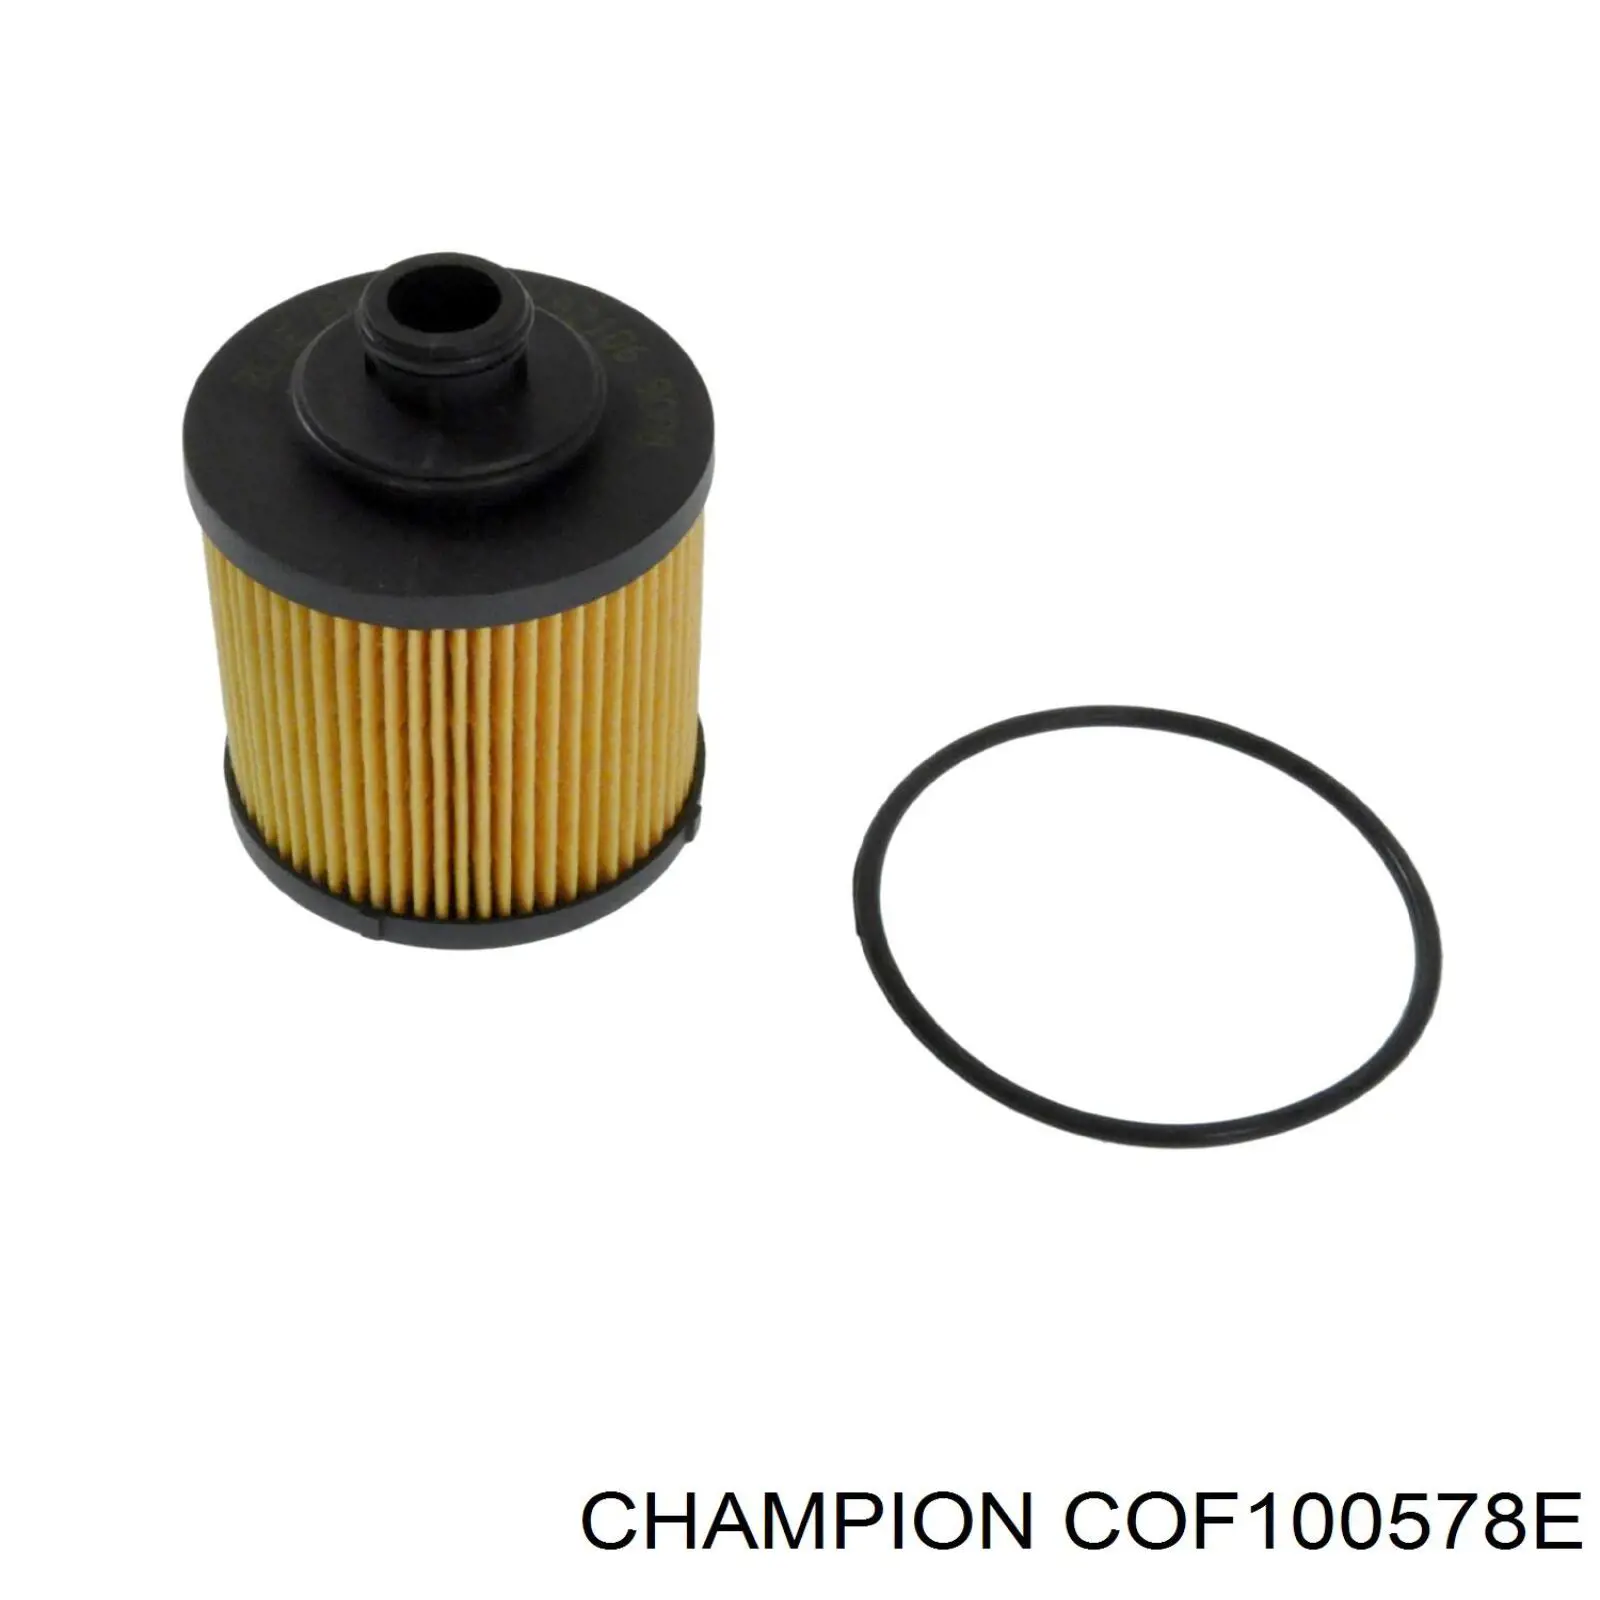 COF100578E Champion filtro de aceite